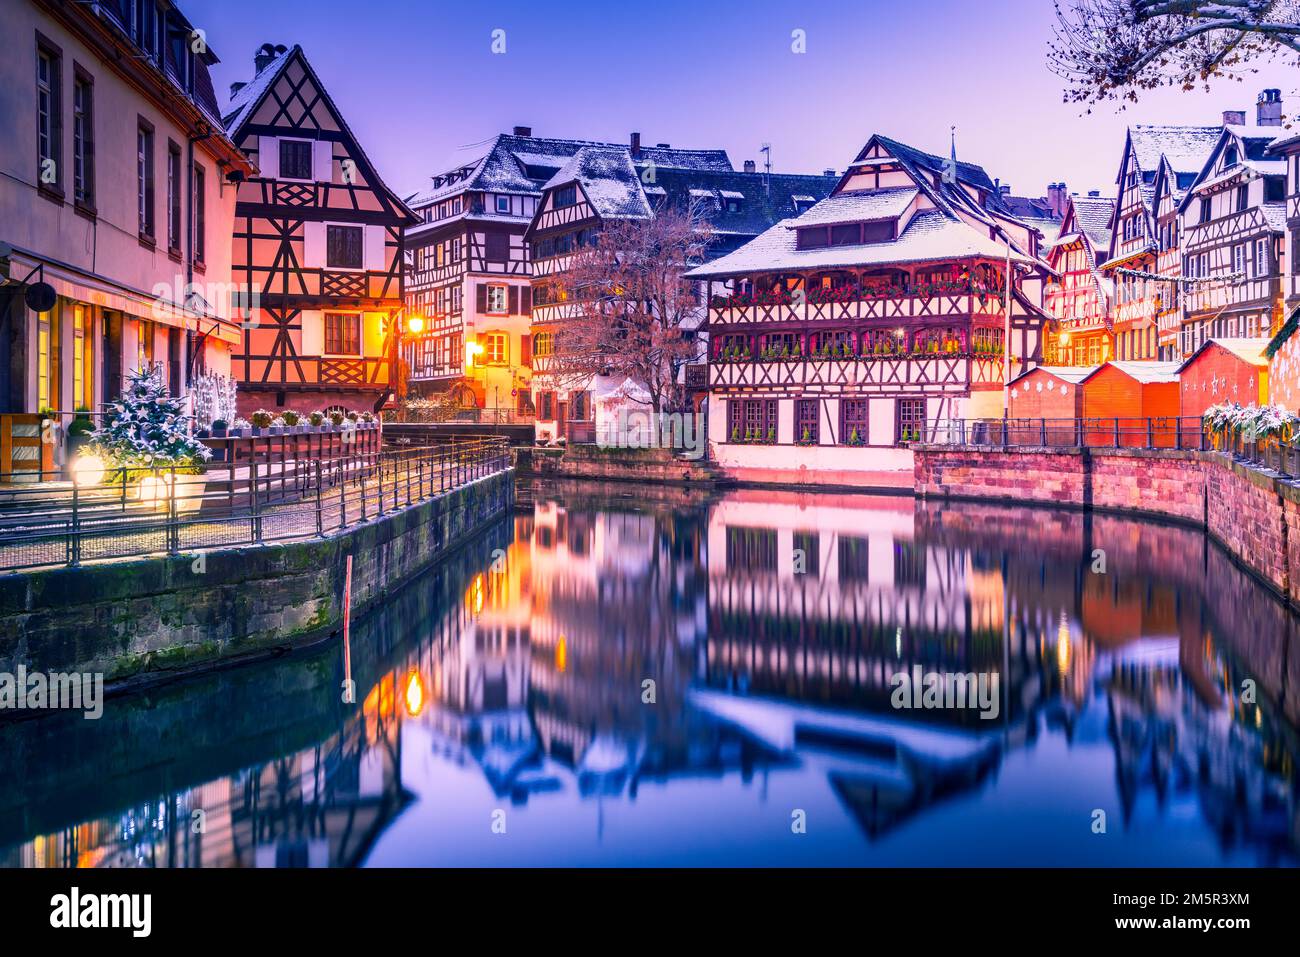 Straßburg, Elsass. Traditionelle elsässische Fachwerkhäuser mit Spiegelreflexionen in Petite France während der Weihnachtszeit mit Dämmerung. Stockfoto